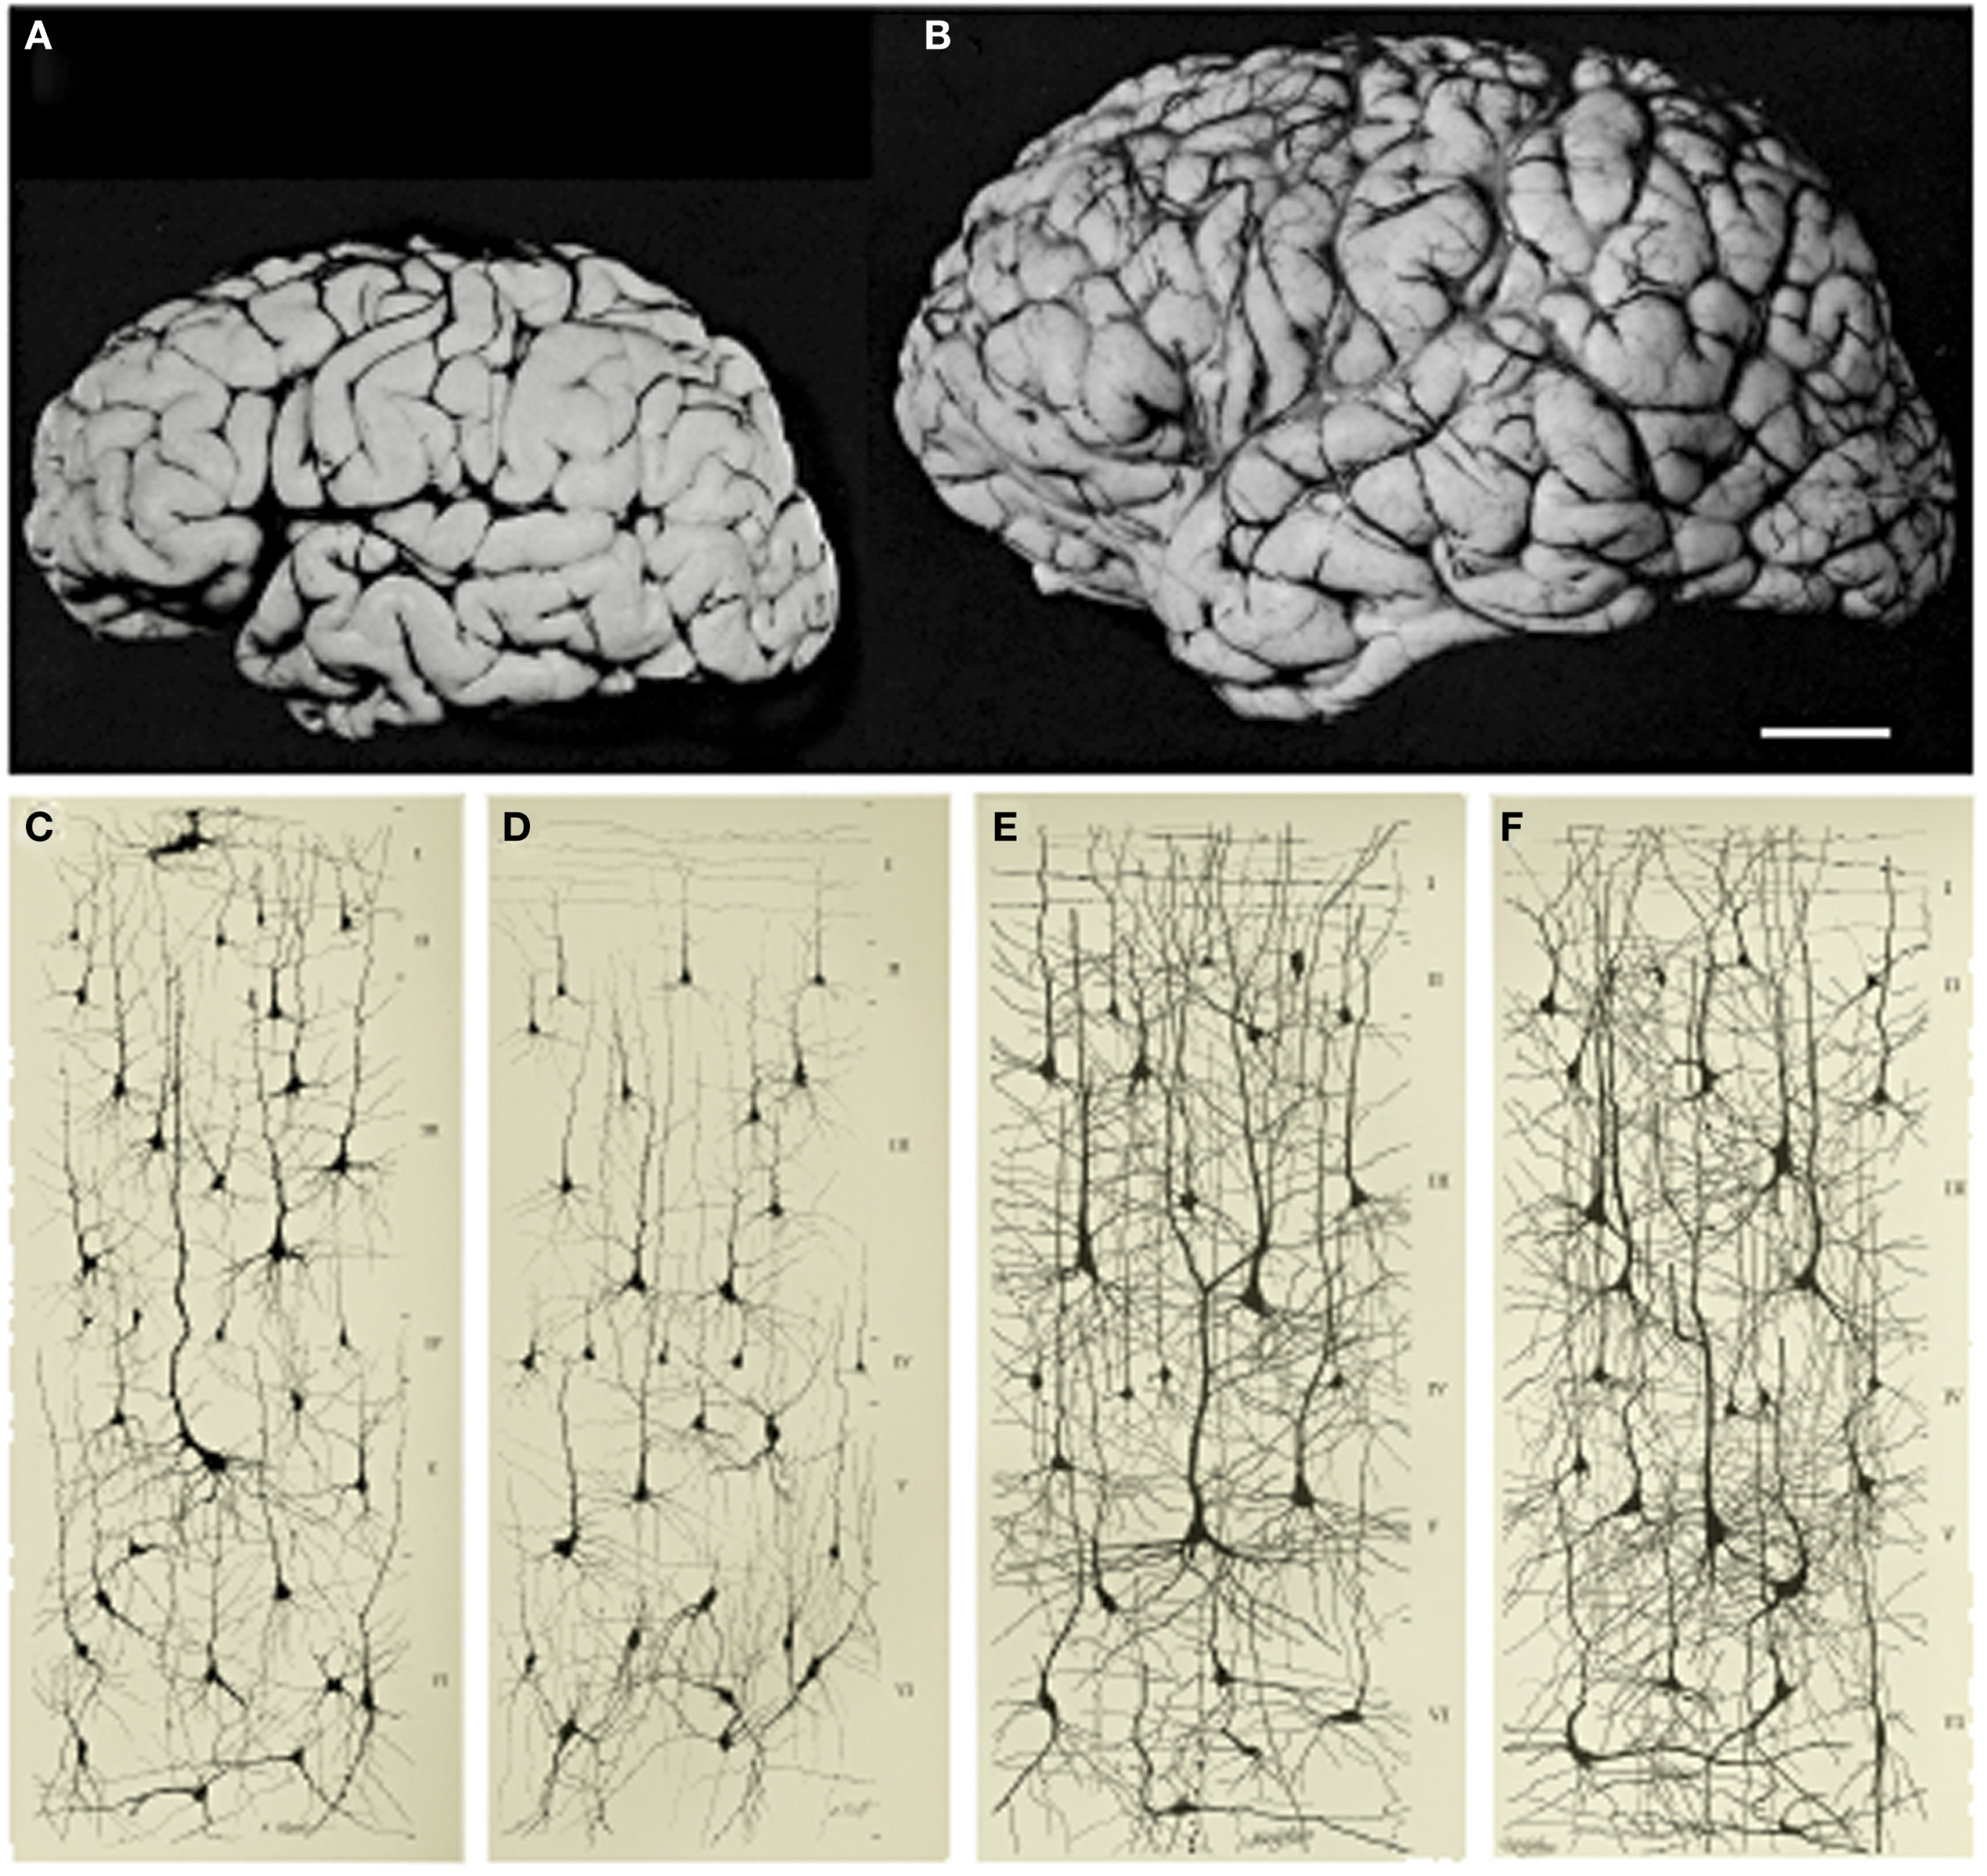 Fotografías de los cerebros de un niño de un mes y un niño de seis años, con dibujos de neuronas, como se describe en la leyenda